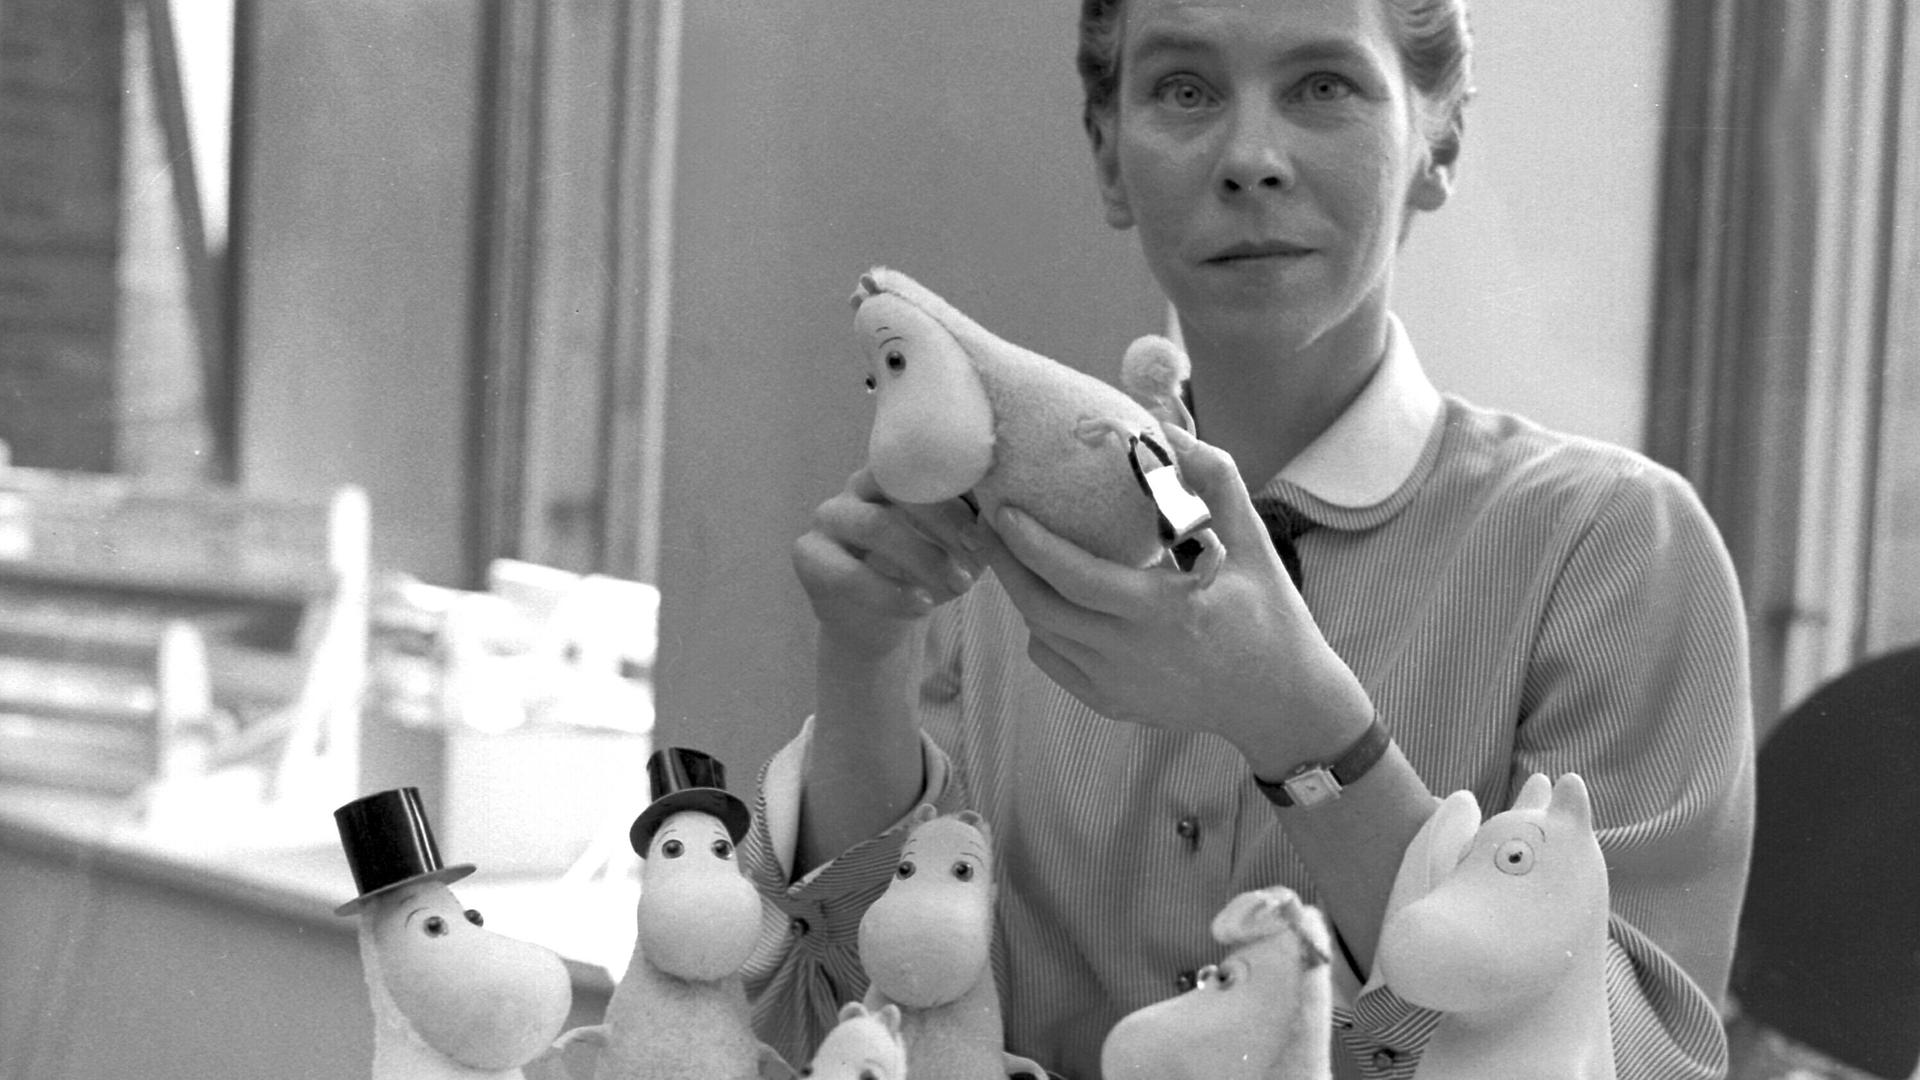 Die Künstlerin Tove Jansson zeigt auf einem Schwarz-weiß-Foto aus dem Jahr 1956 die von ihr erfundenen Mumins-Figuren.